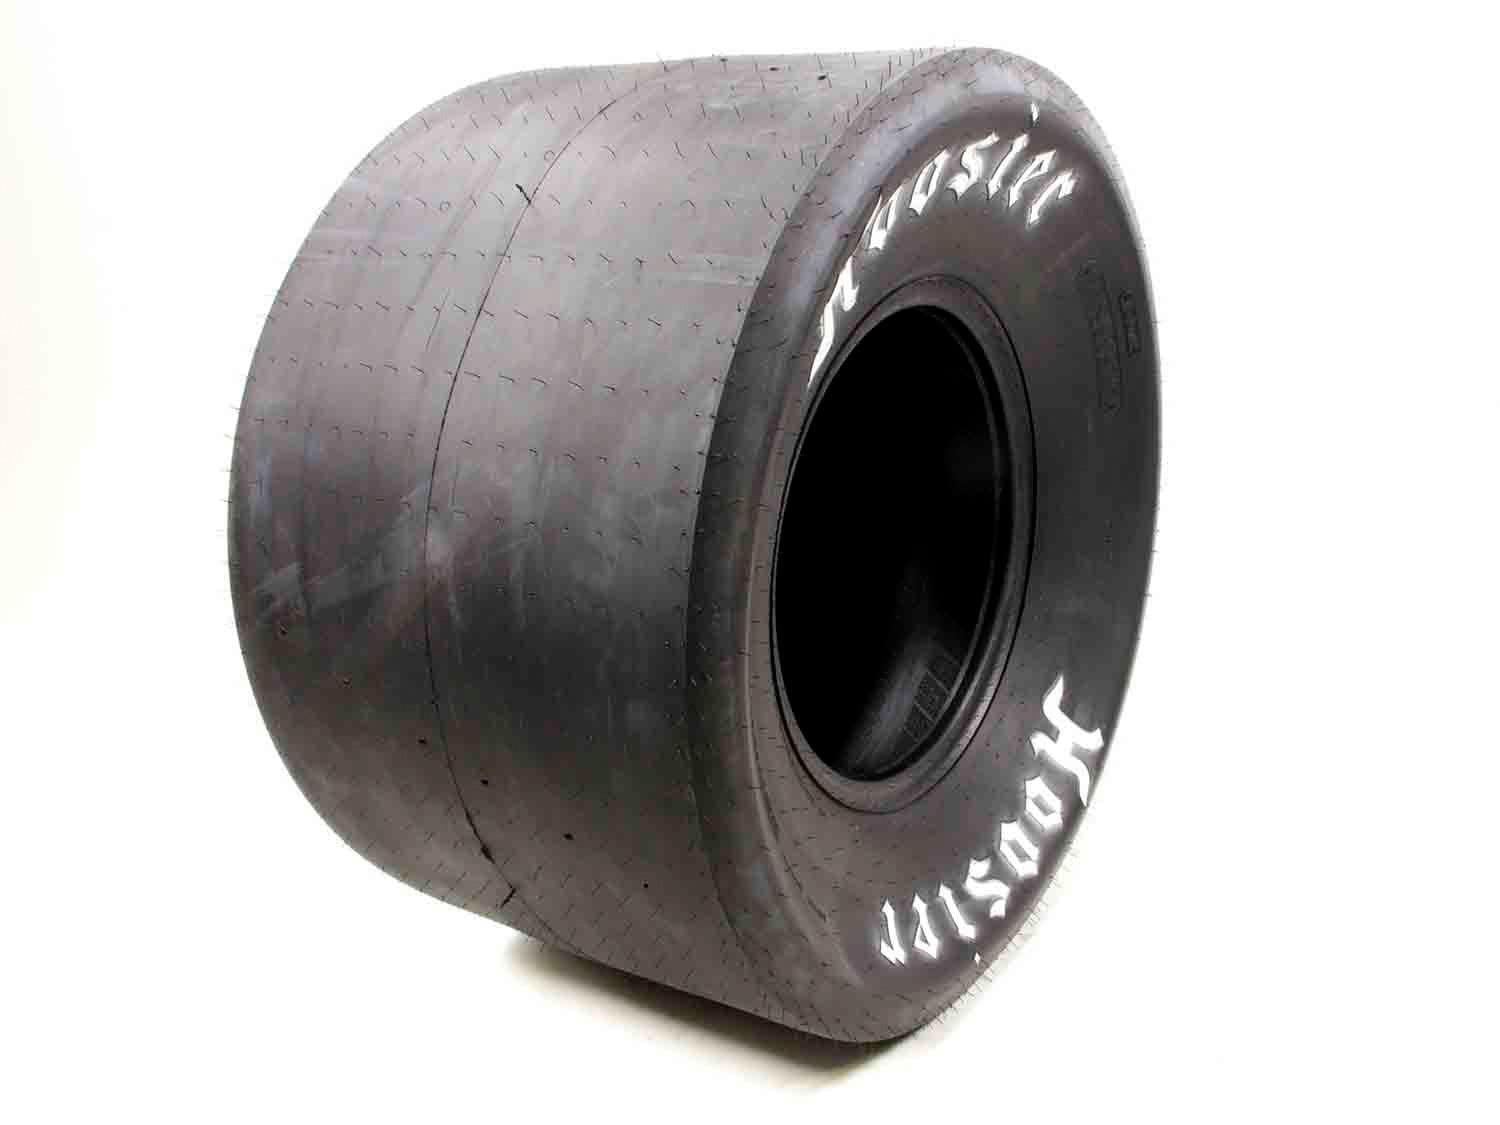 32.0/14.5-15W Drag Tire - Stiff Sidewall - Burlile Performance Products